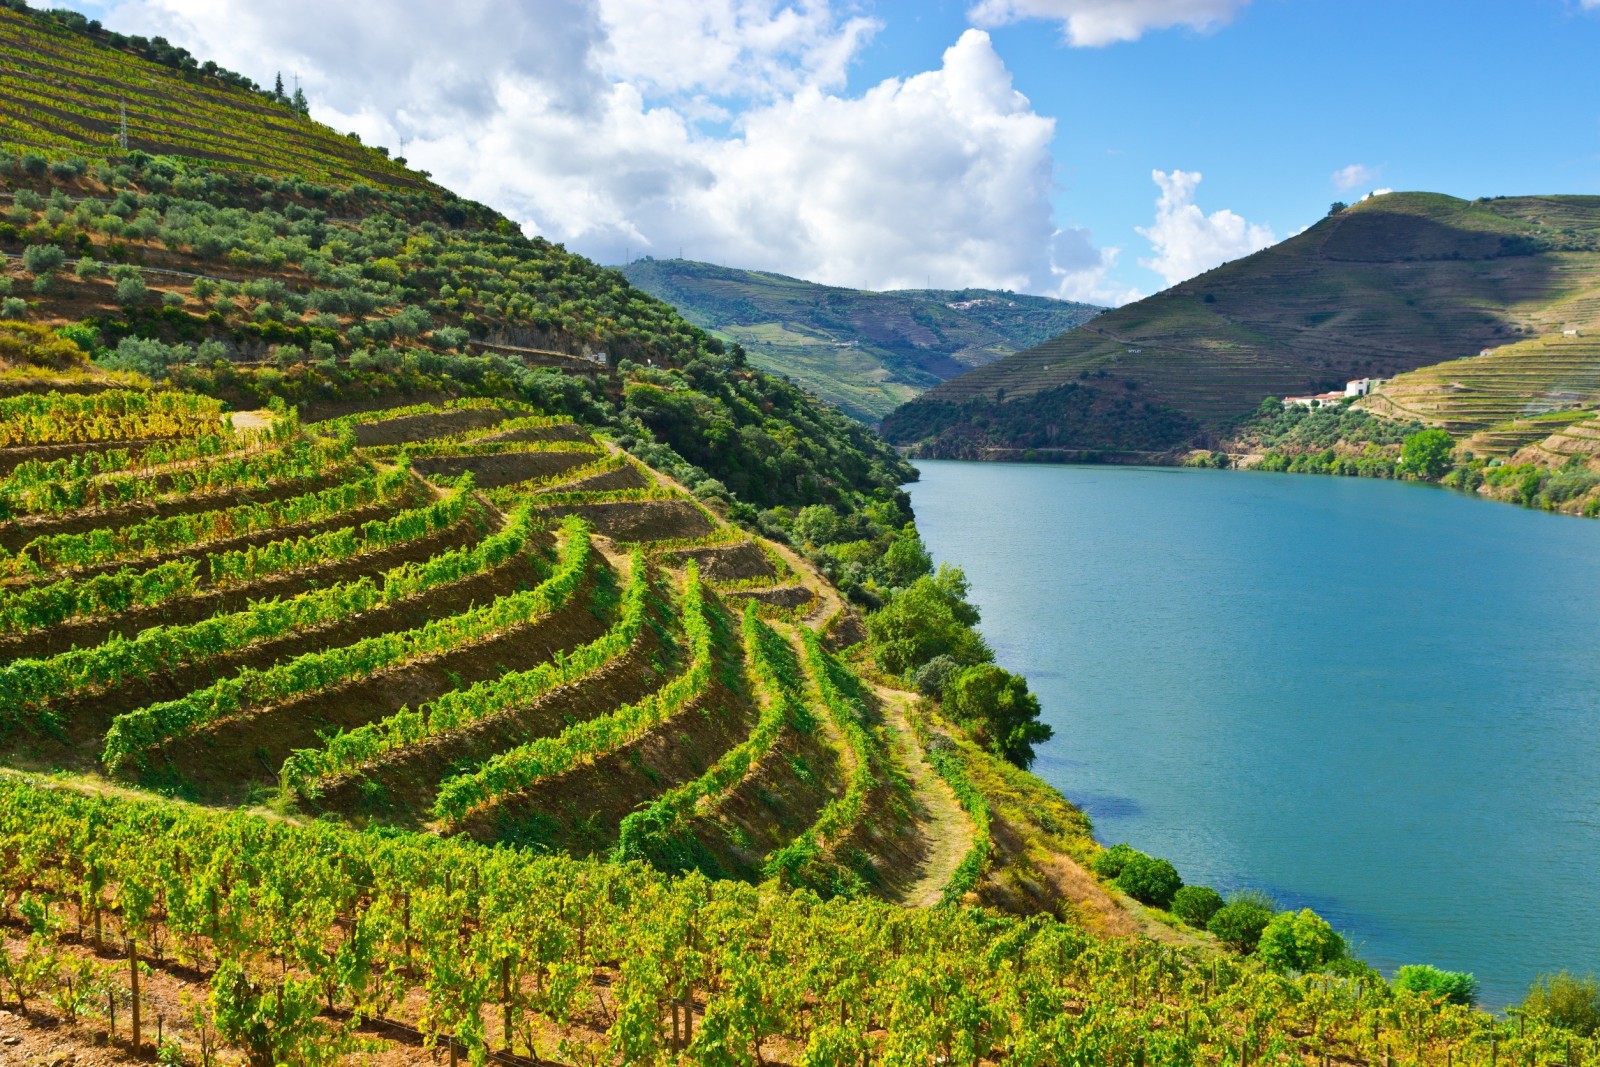 15 milioni di euro per la distillazione di crisi in Portogallo - L'UE vuole ridurre l'eccedenza di vino